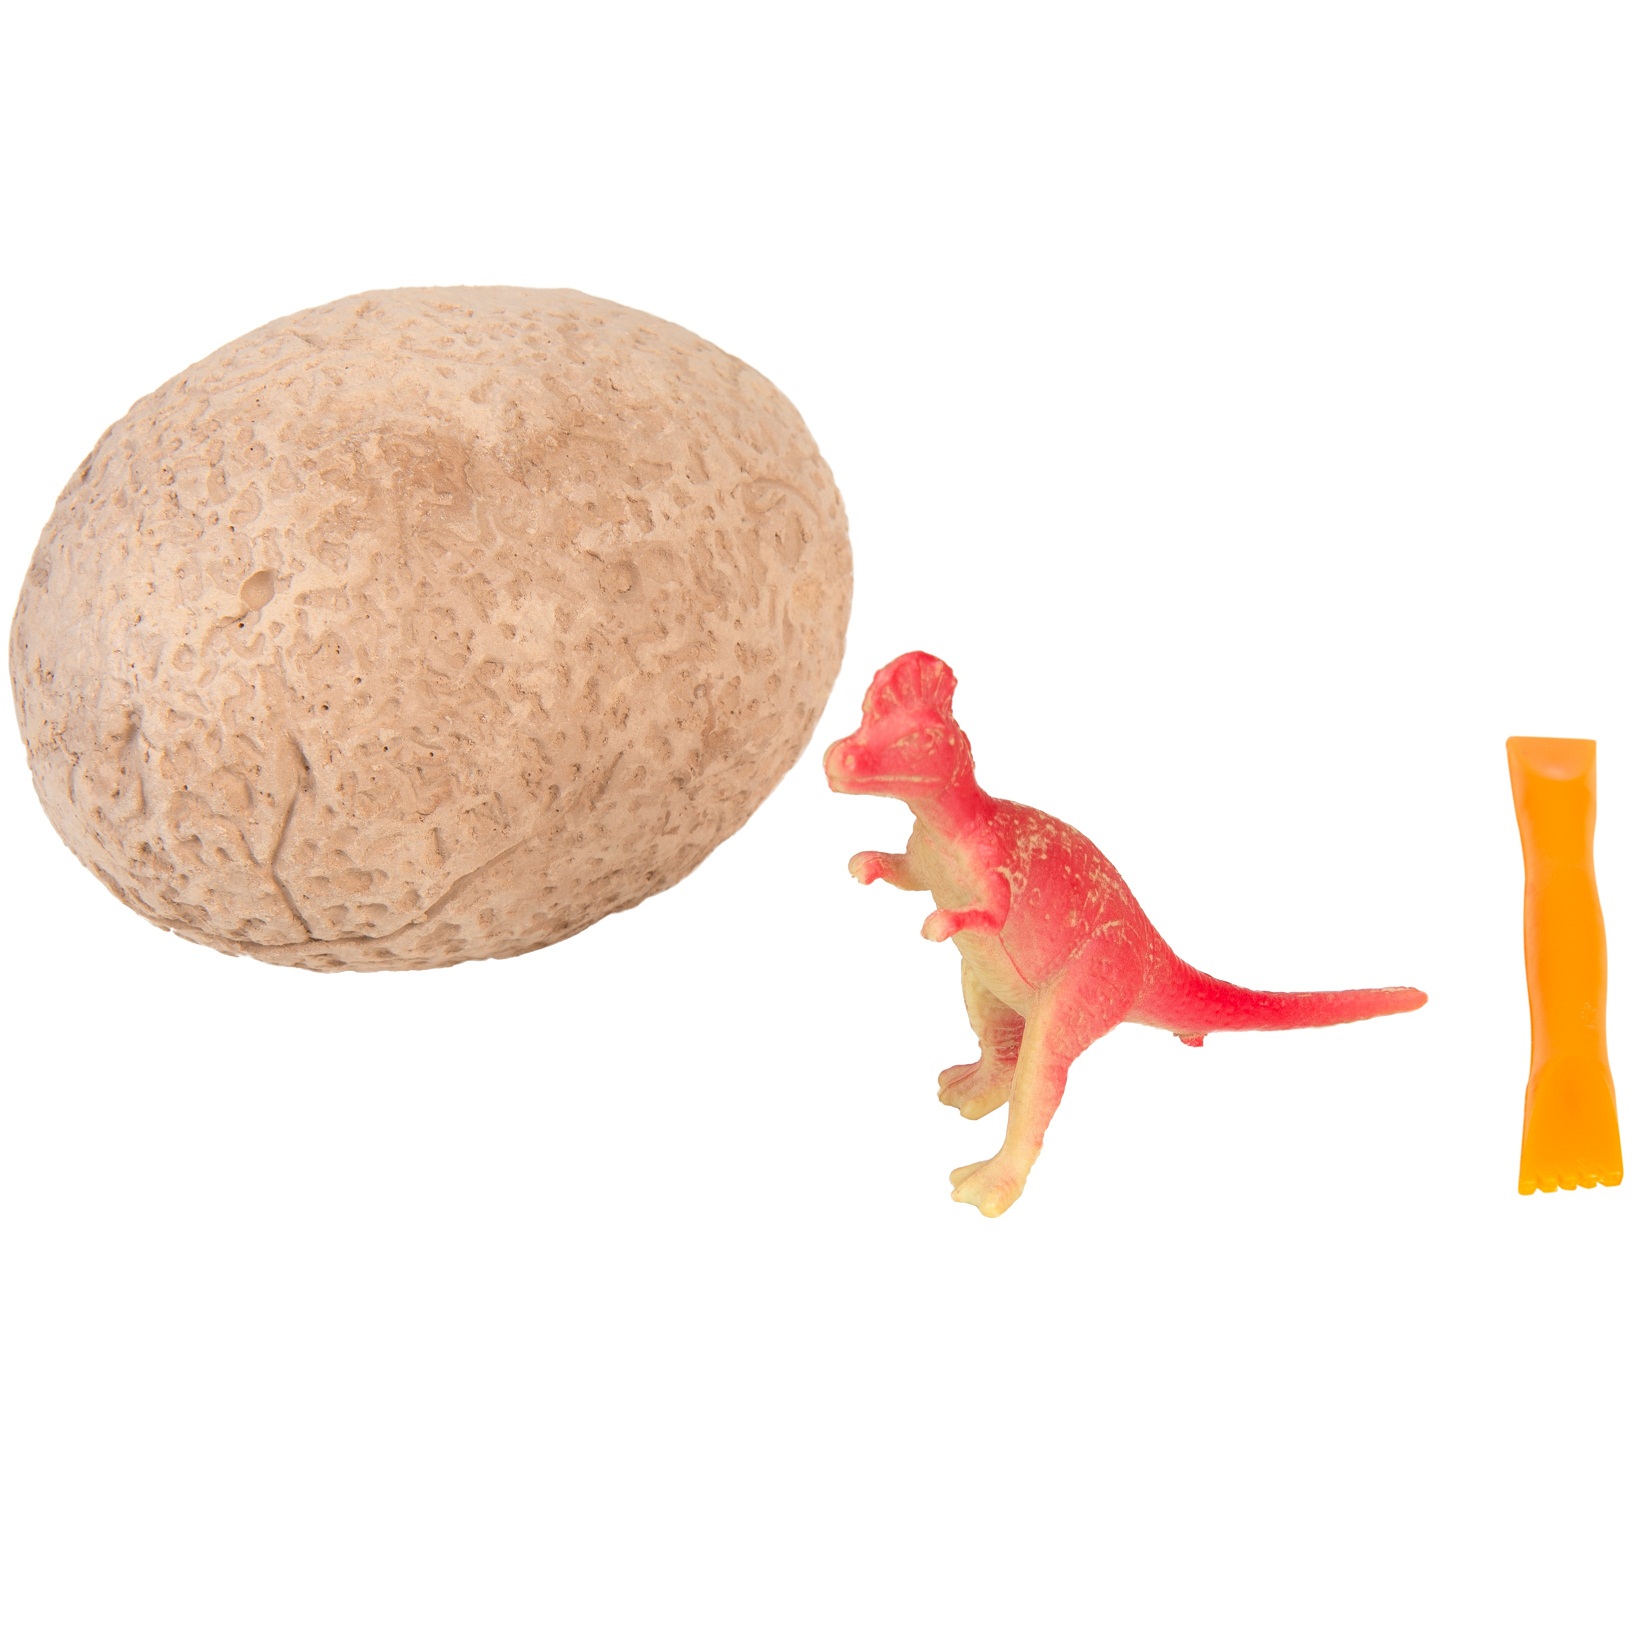 Яйца динозавров купить. Яйцо раскопки динозавра Smashers. Modi яйцо динозавра набор раскопок. Яйца раскопки динозавров набор. Набор для раскопок яйцо динозавра.